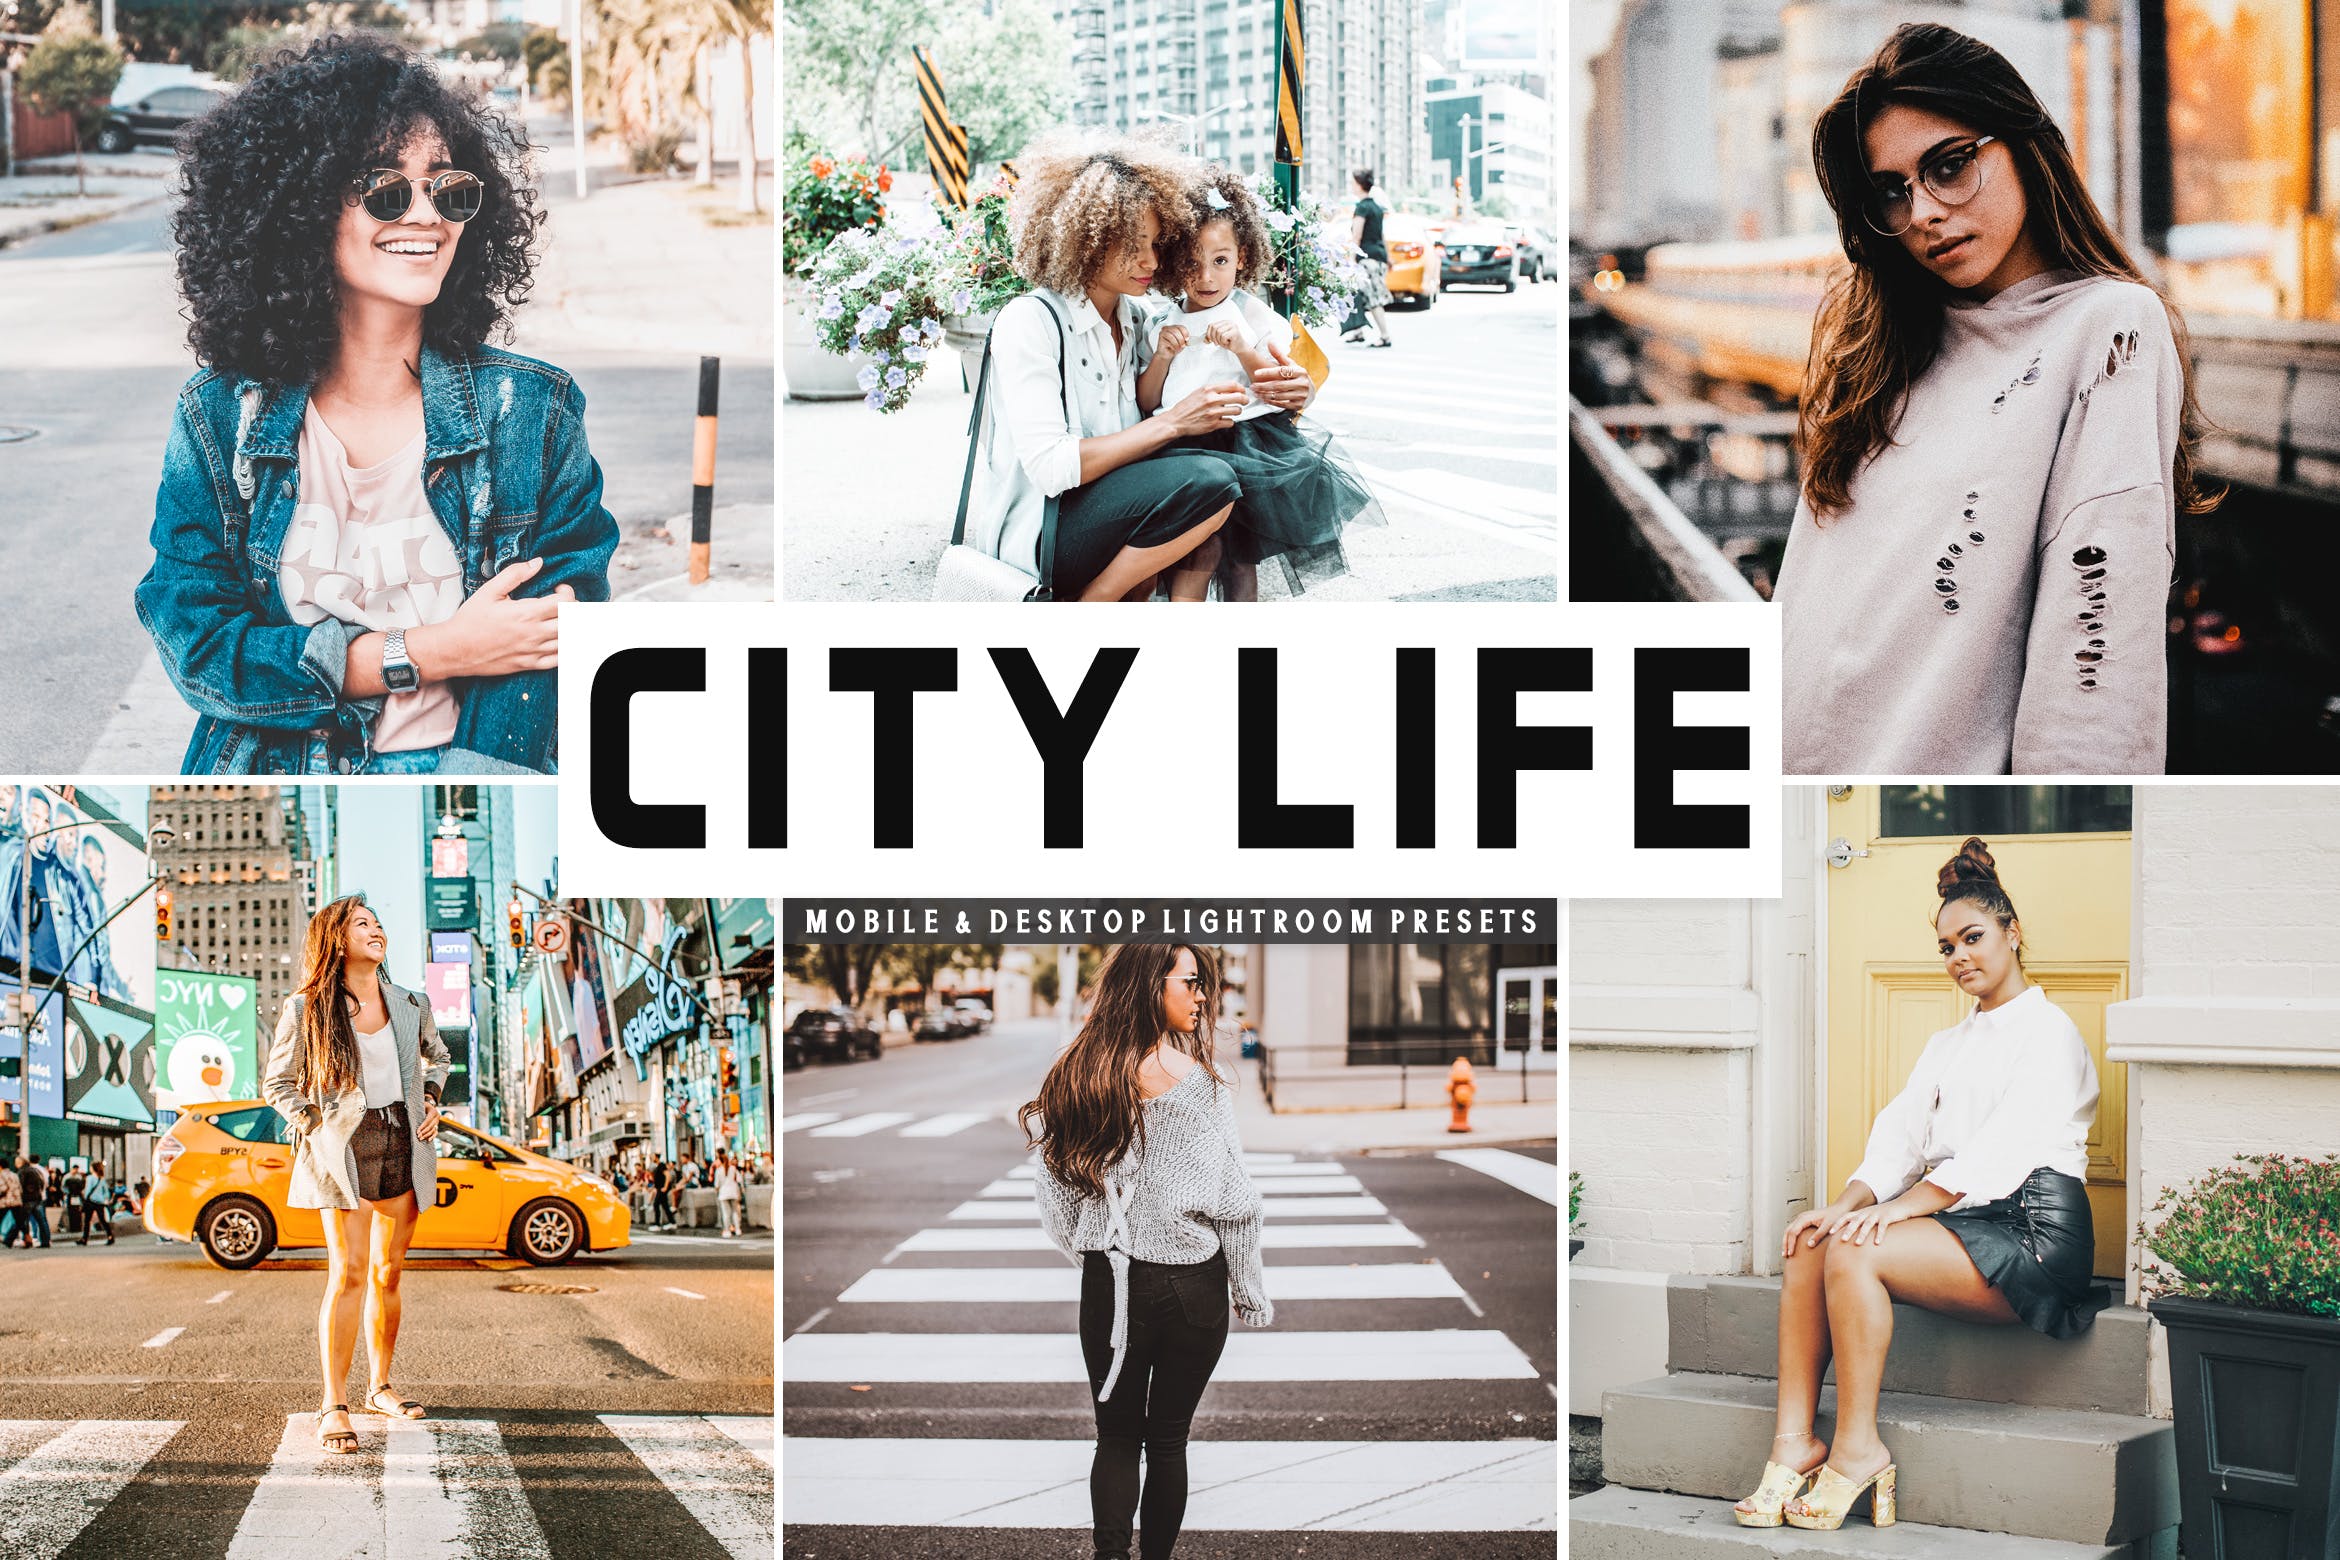 城市生活照片必备调色滤镜大洋岛精选LR预设 City Life Mobile & Desktop Lightroom Presets插图